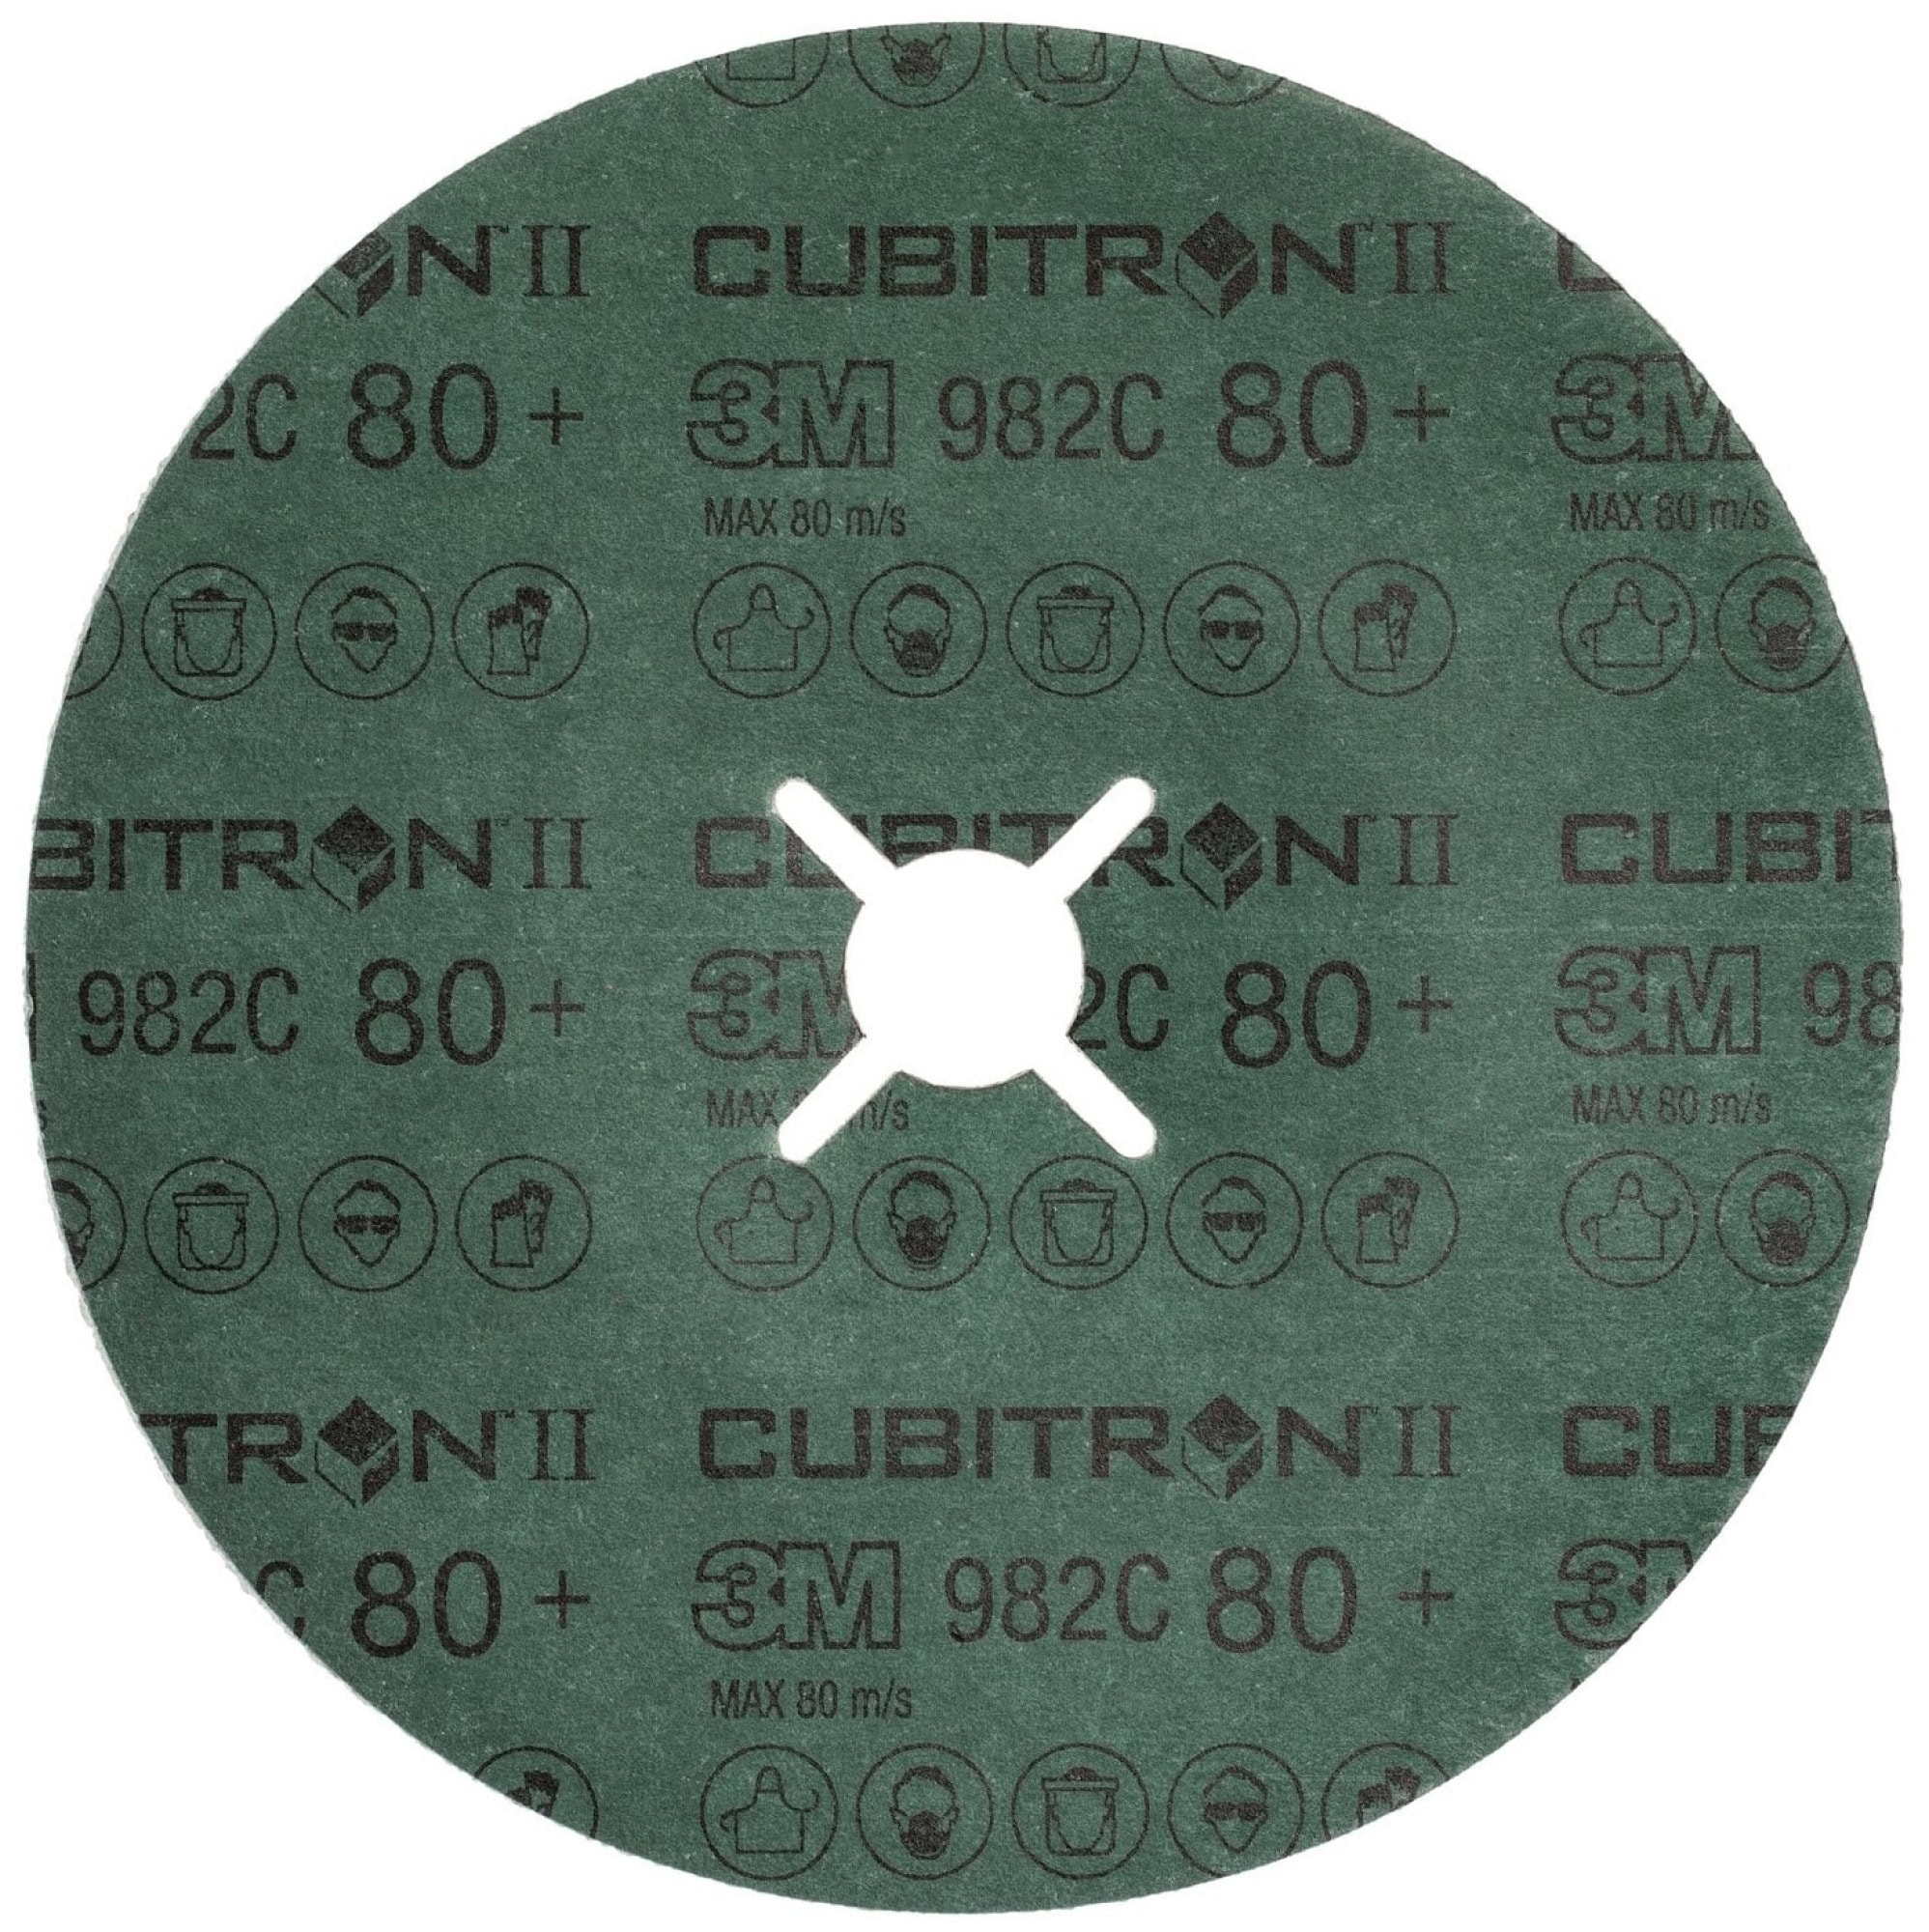 3M™ Cubitron™ II 982C 460706, Ø 115 mm x ø 22,23 mm, 80+, 13.200 U./Min., Fiberscheibe mit Präzisions-Keramikkorn